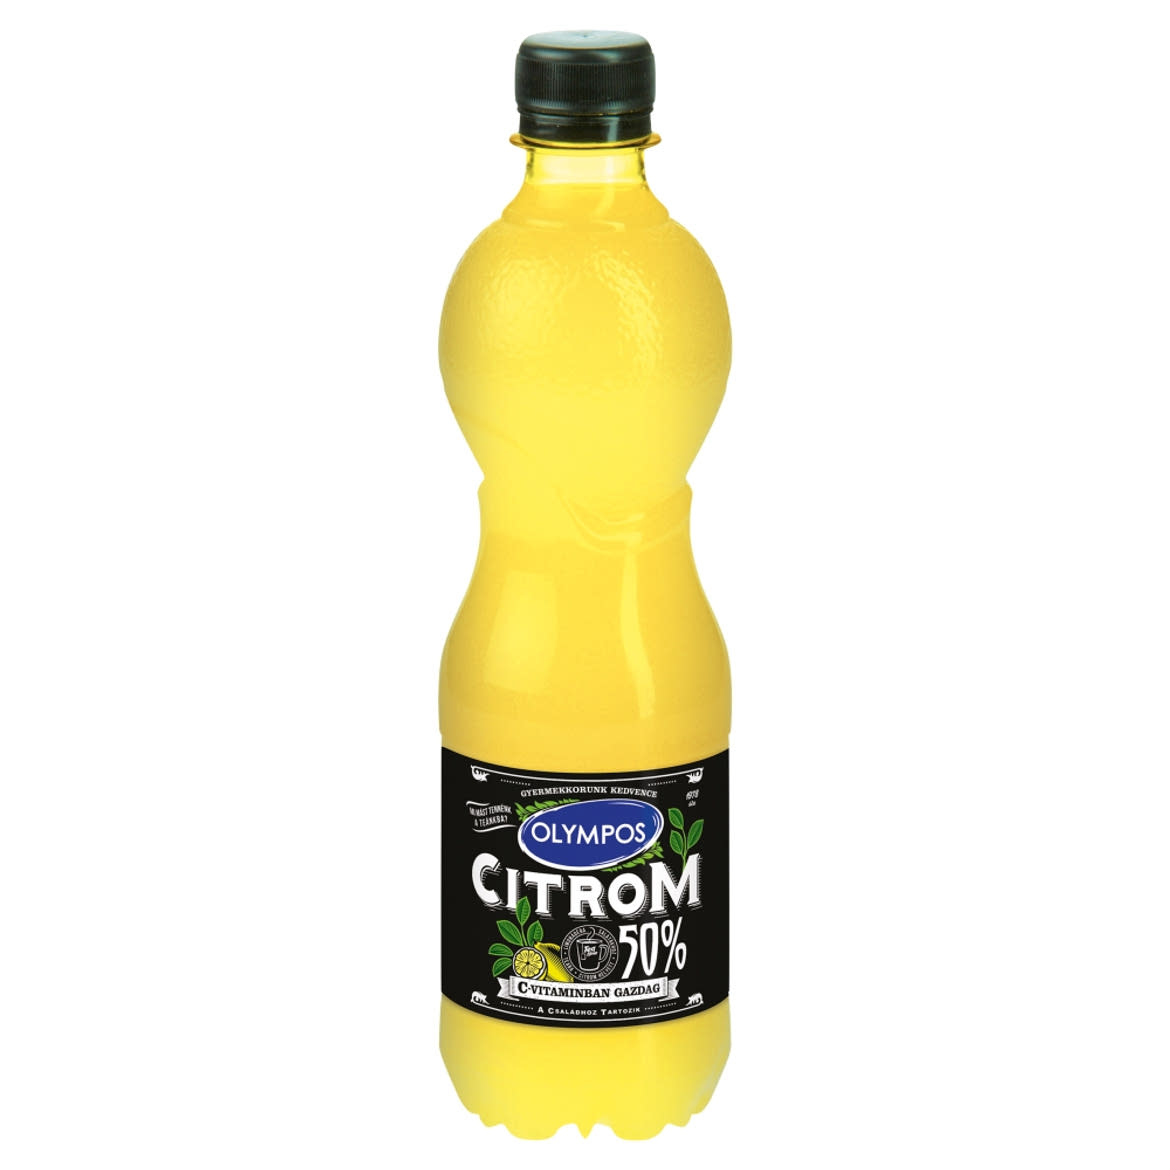 Olympos citrom ízesítő 50% citromlé tartalommal